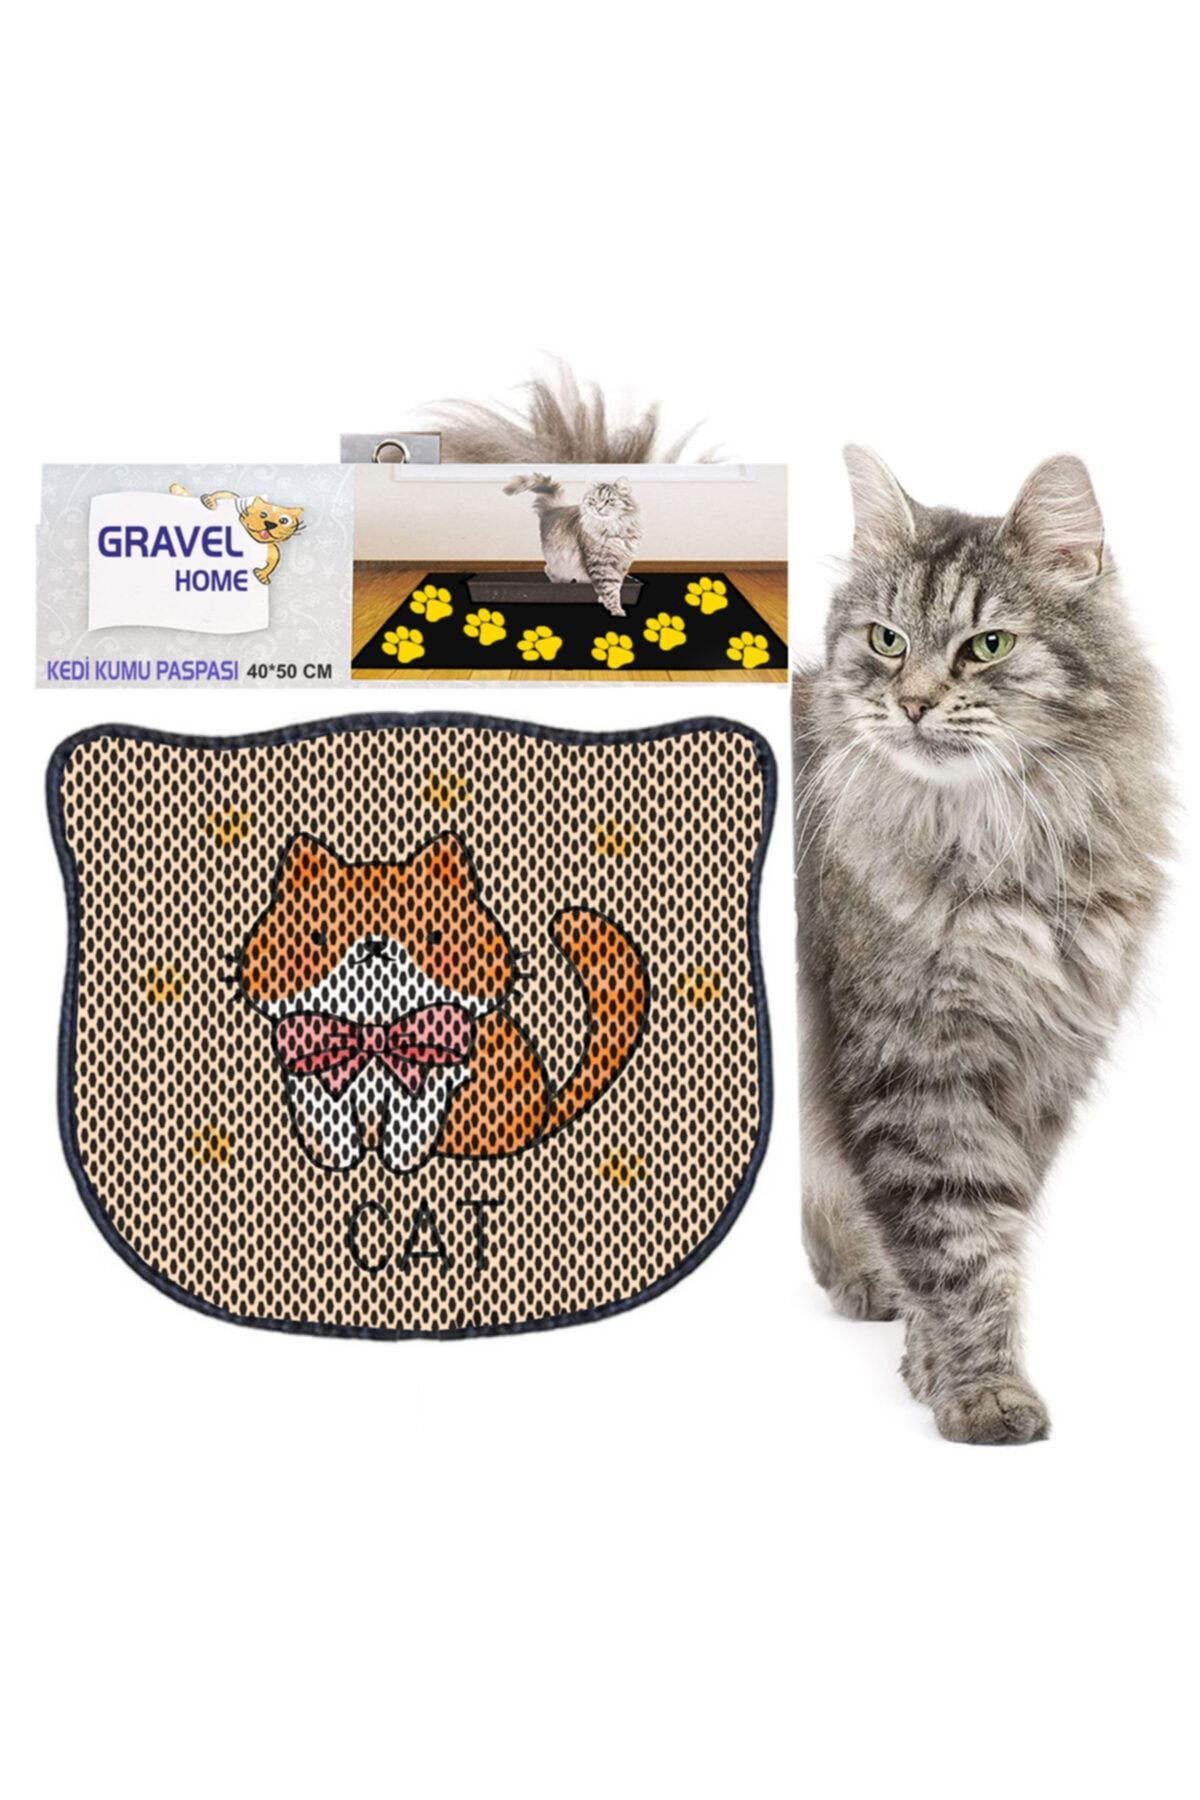 Gravel Kedi Tuvaleti Önü Dekoratif Elekli Kedi Kumu Paspası Fiyatı